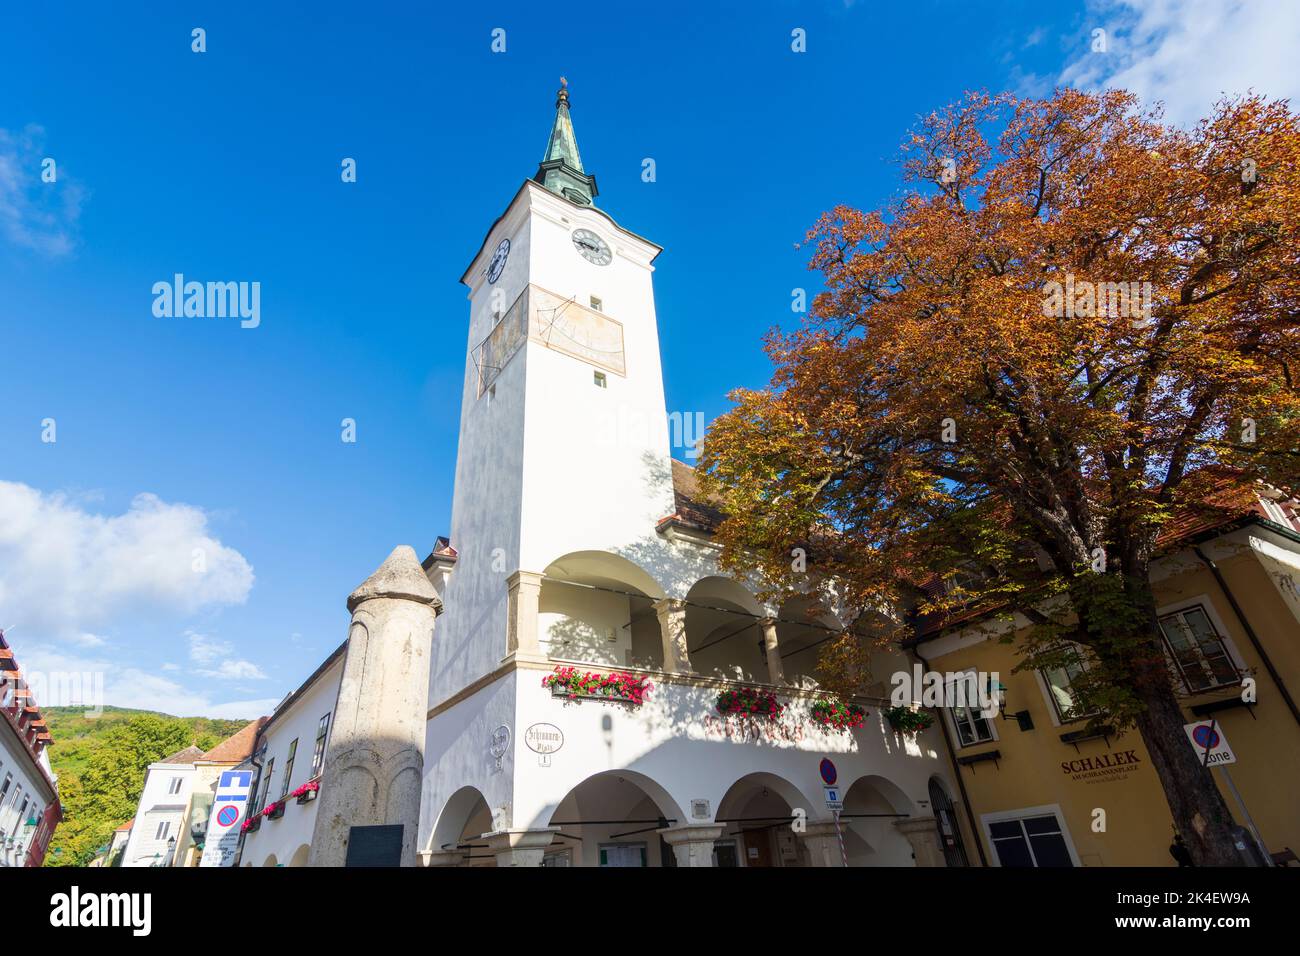 Gumpoldskirchen: Altstadt Gumpoldskirchen, Rathaus mit Turm, Pranger im Wienerwald, Wienerwald, Niederösterreich, Niederösterreich, Österreich Stockfoto